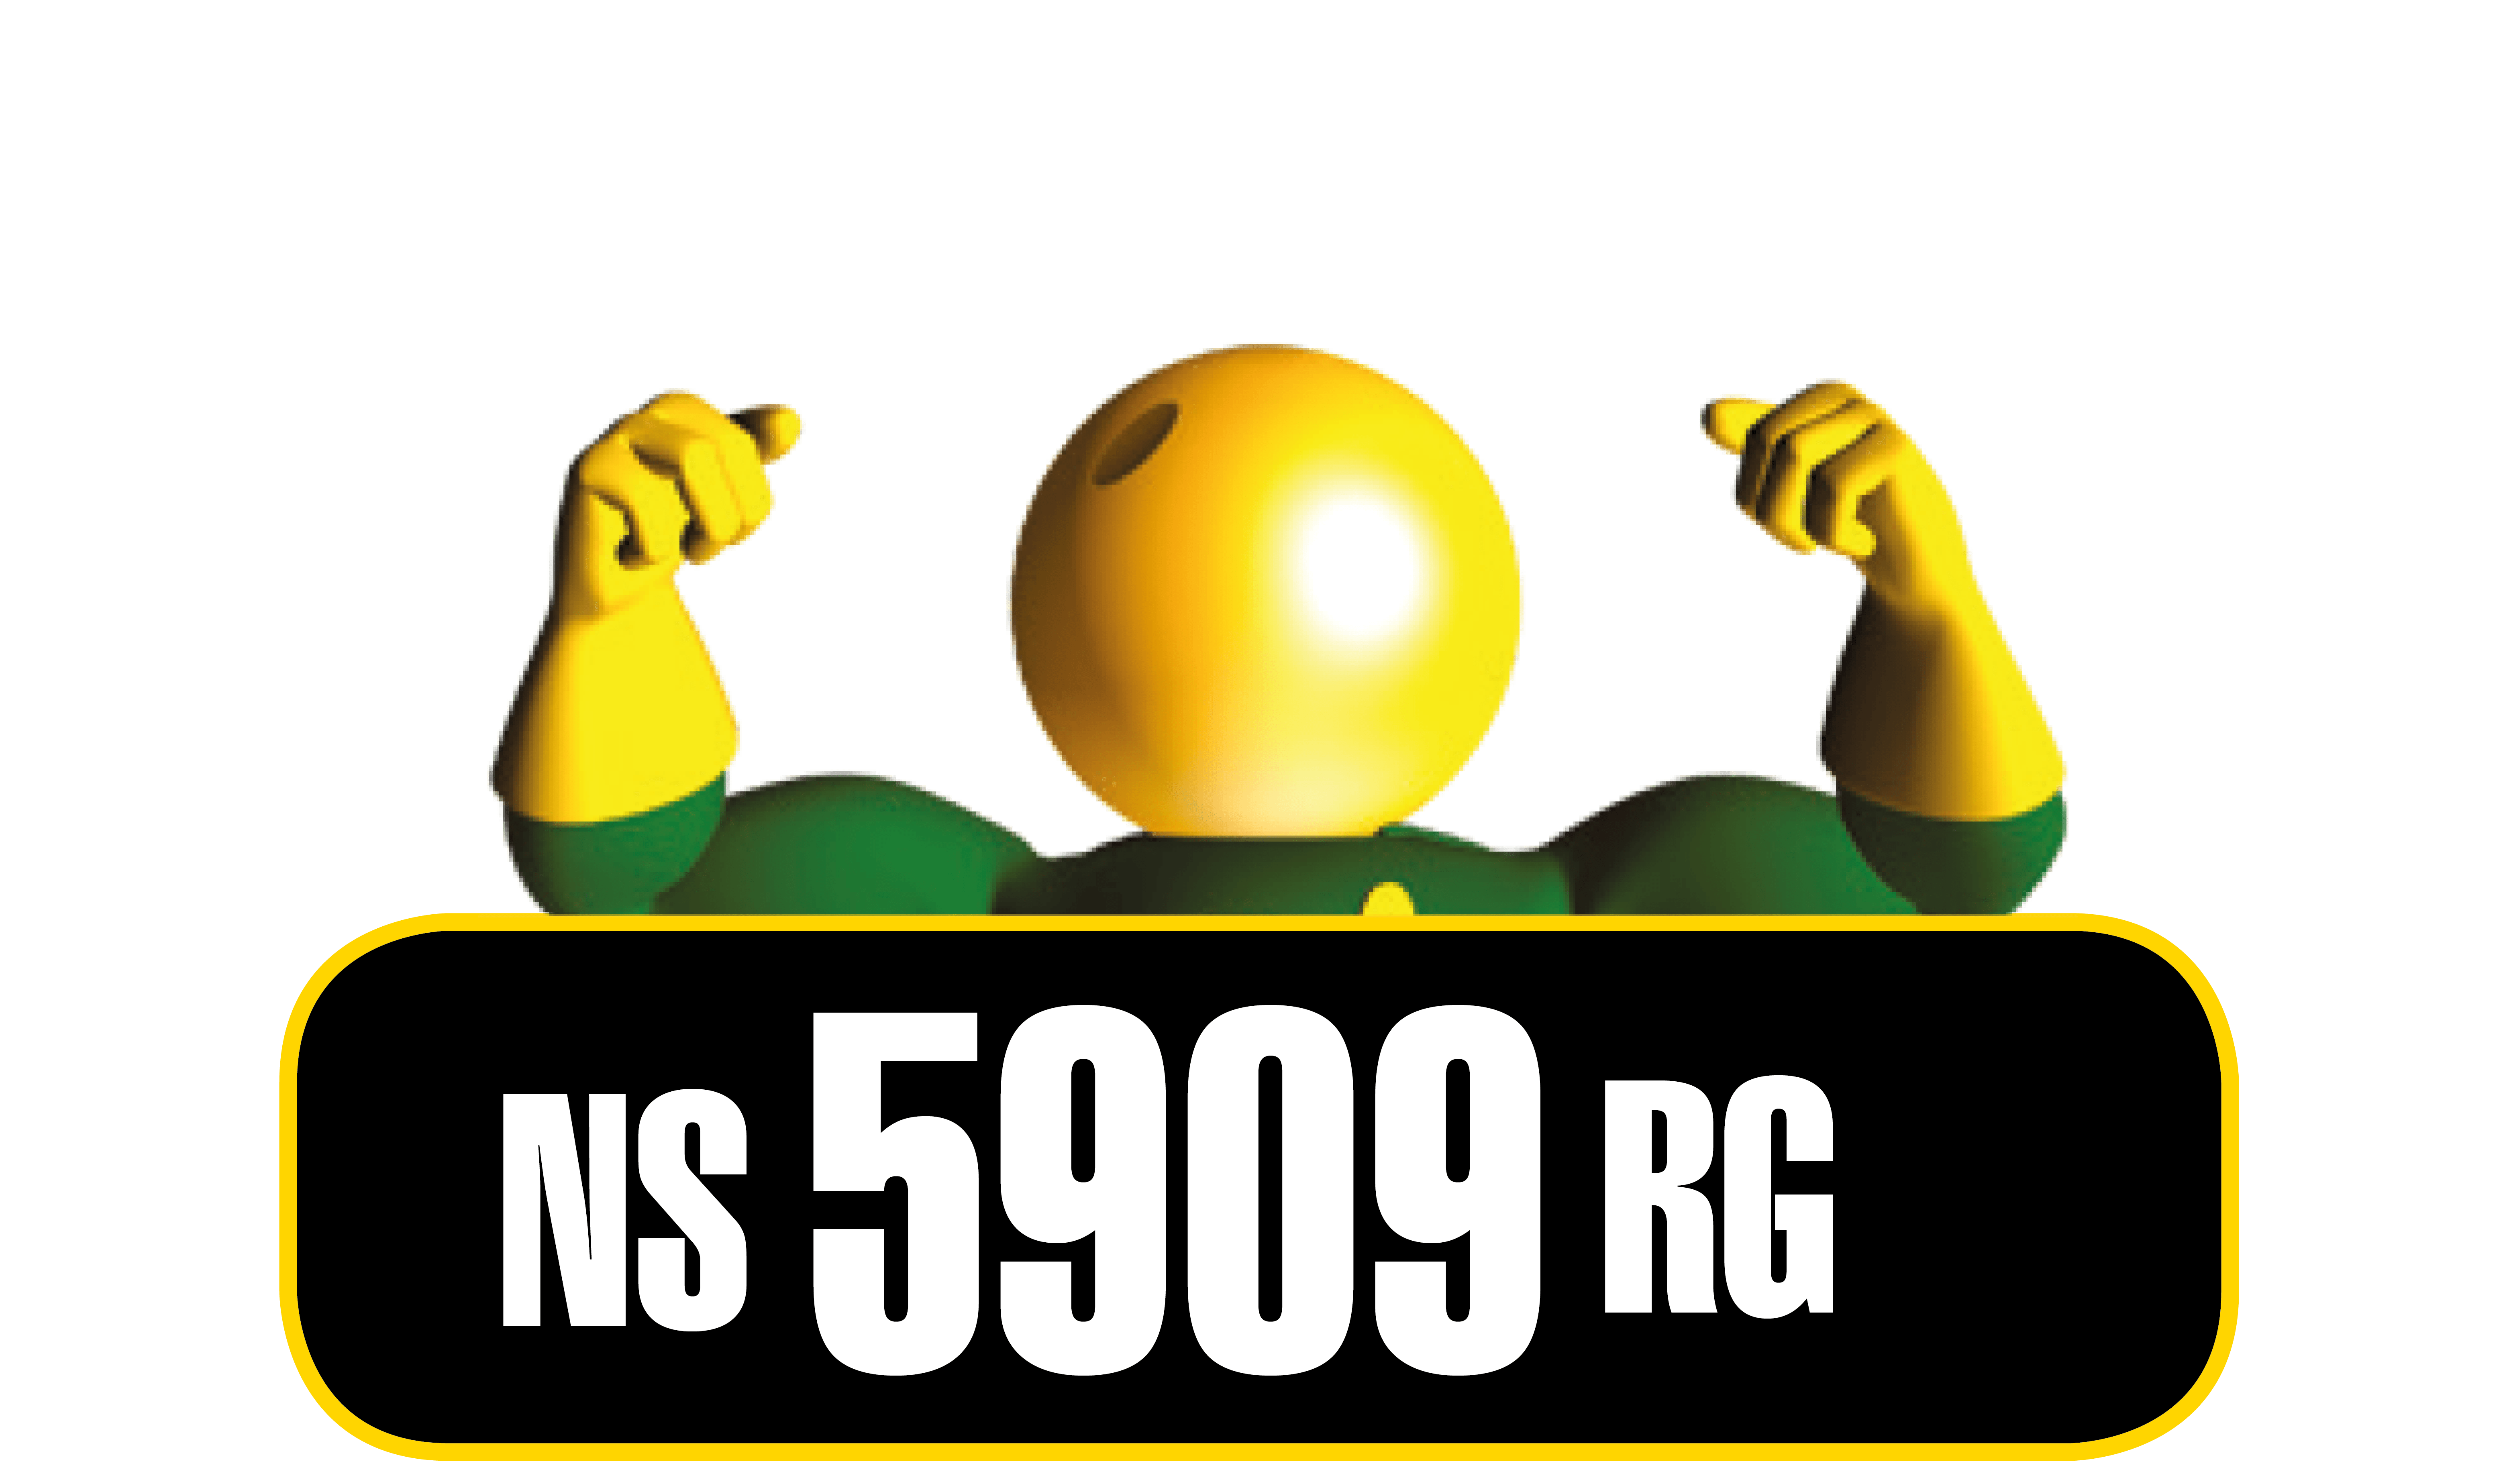 Semillas Nidera NA 5909 RG